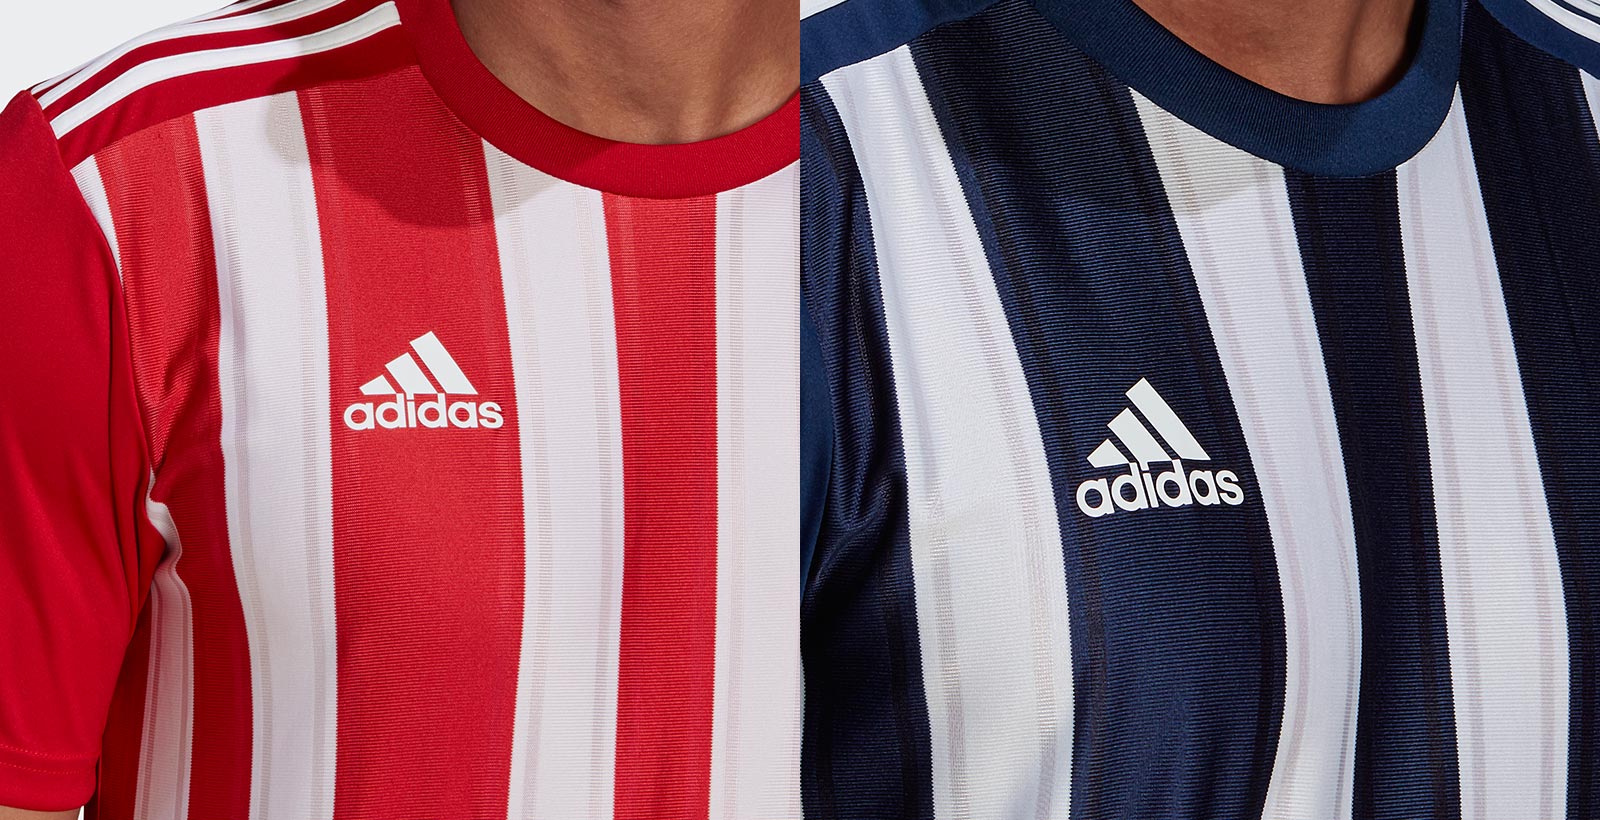 Adidas Striped 21 Teamwear Template Leaked - 2021-22 Season Headlines